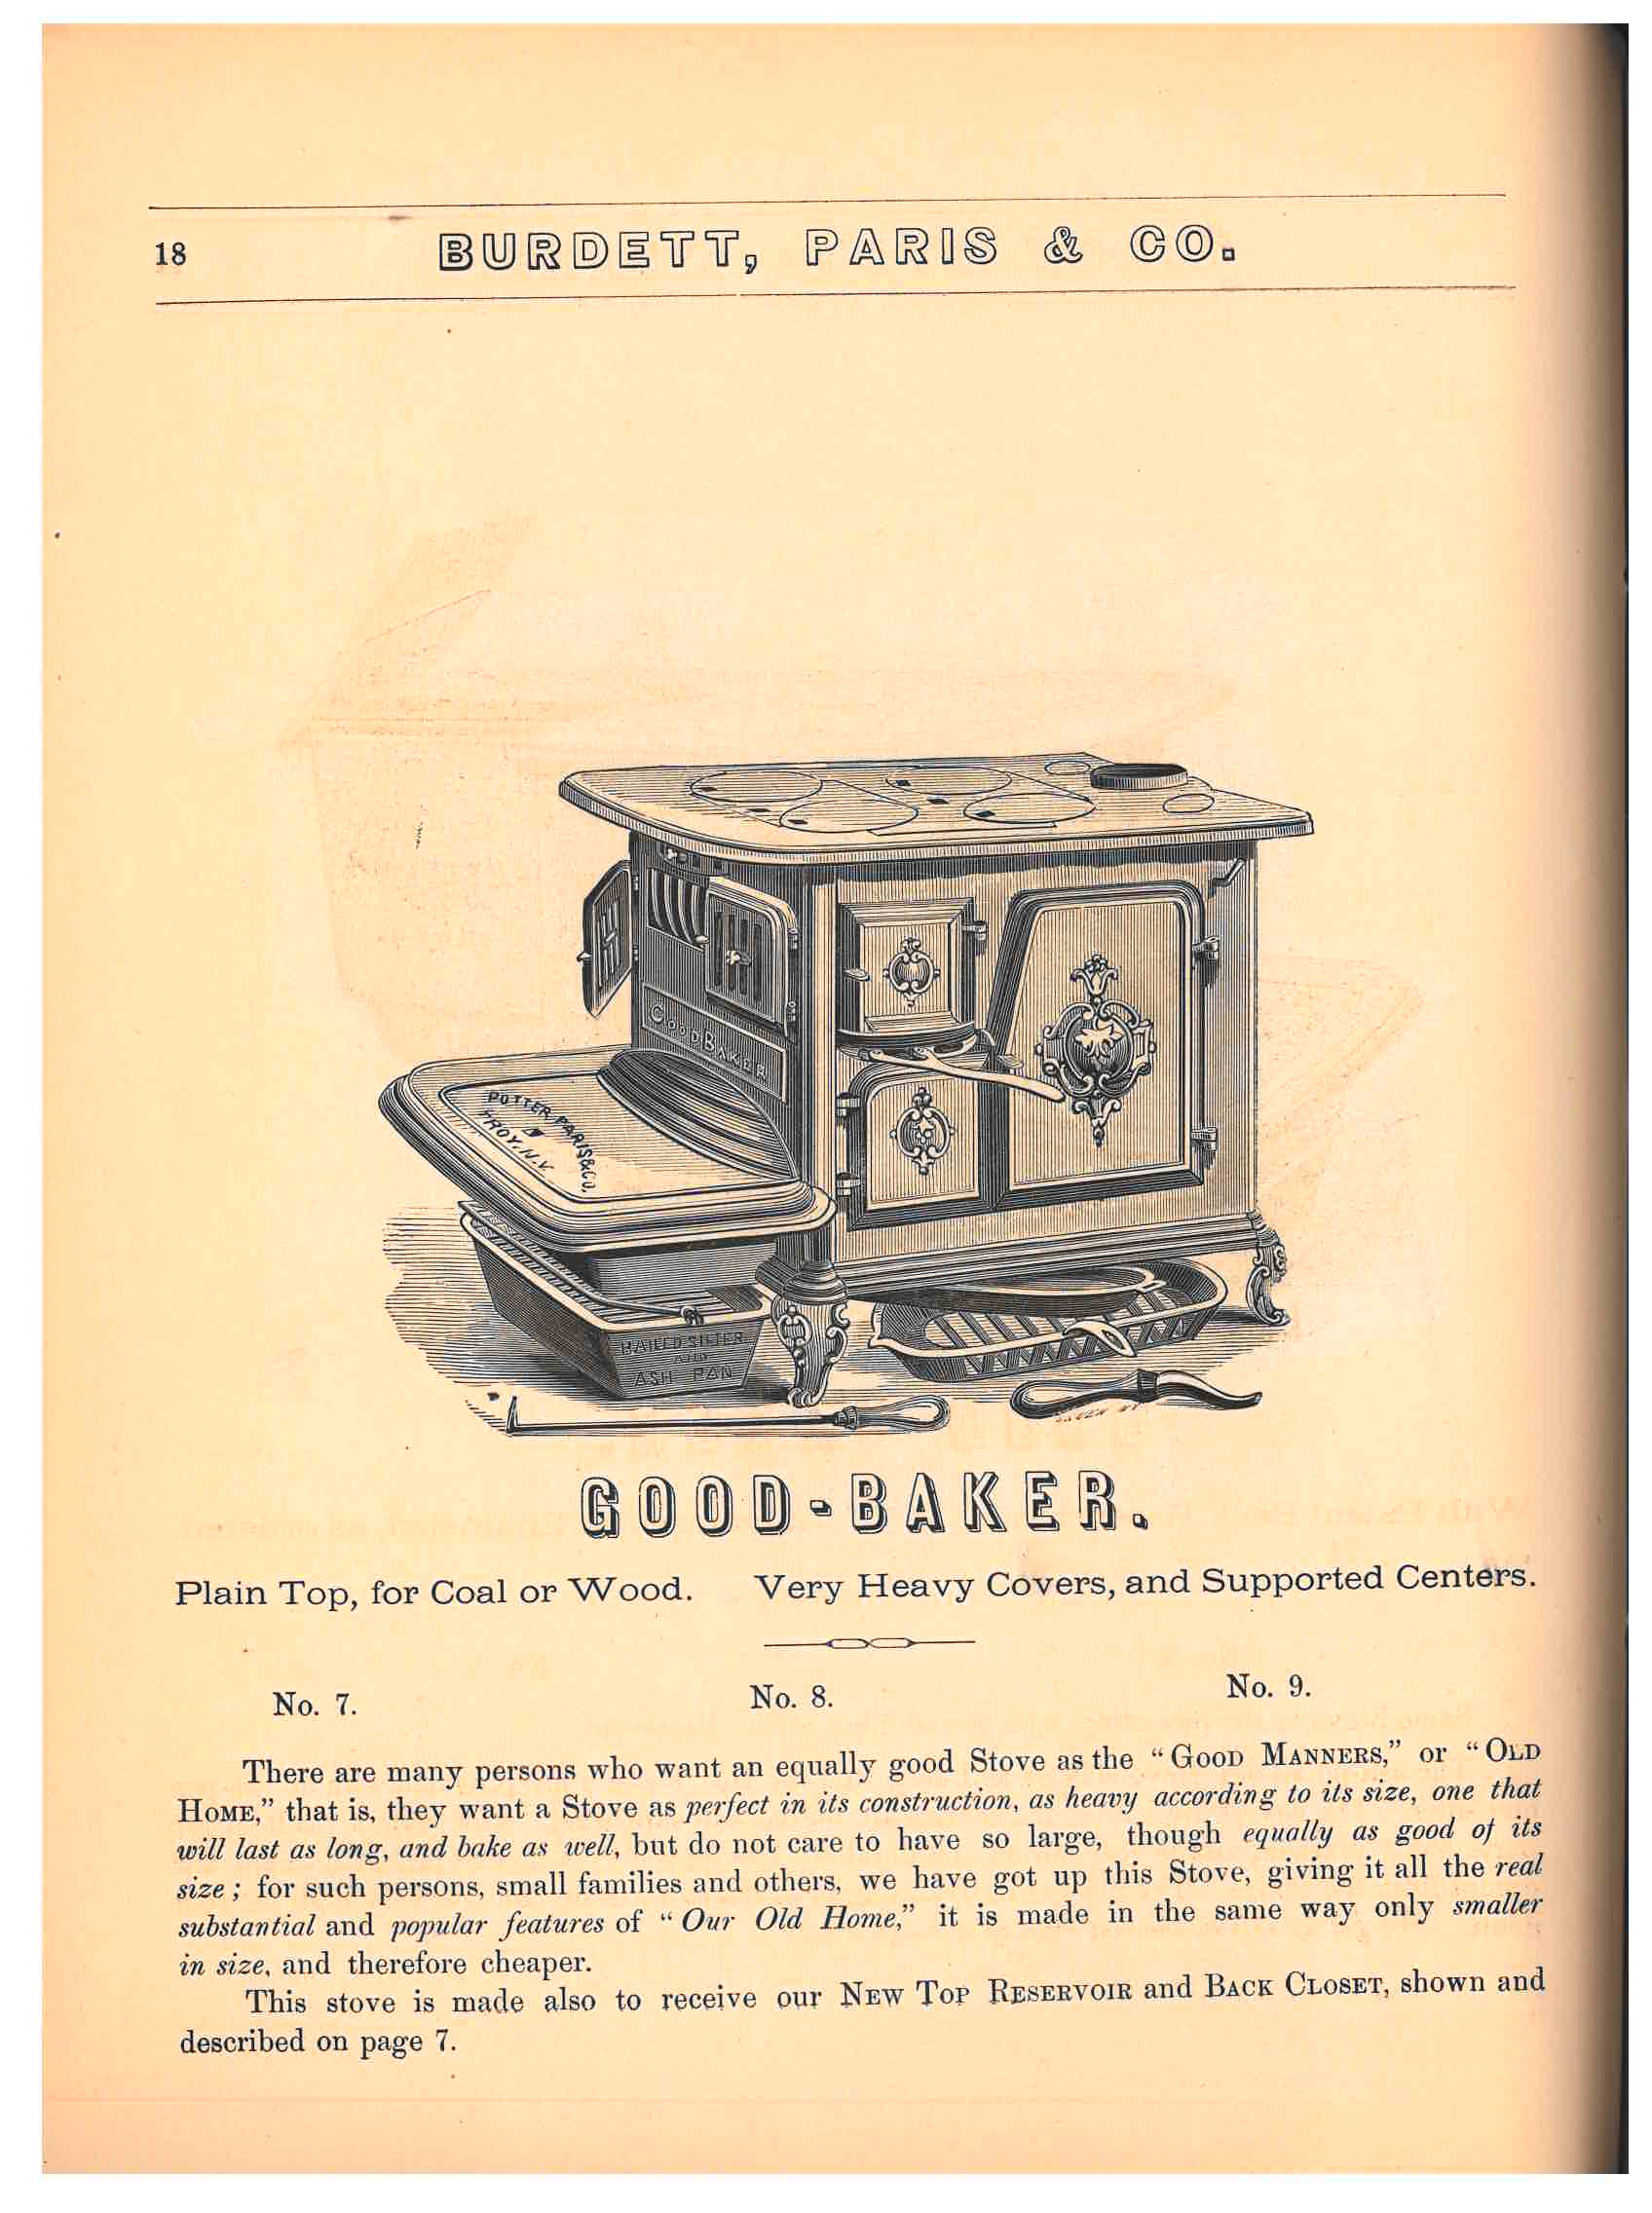 "Good-Baker" stove